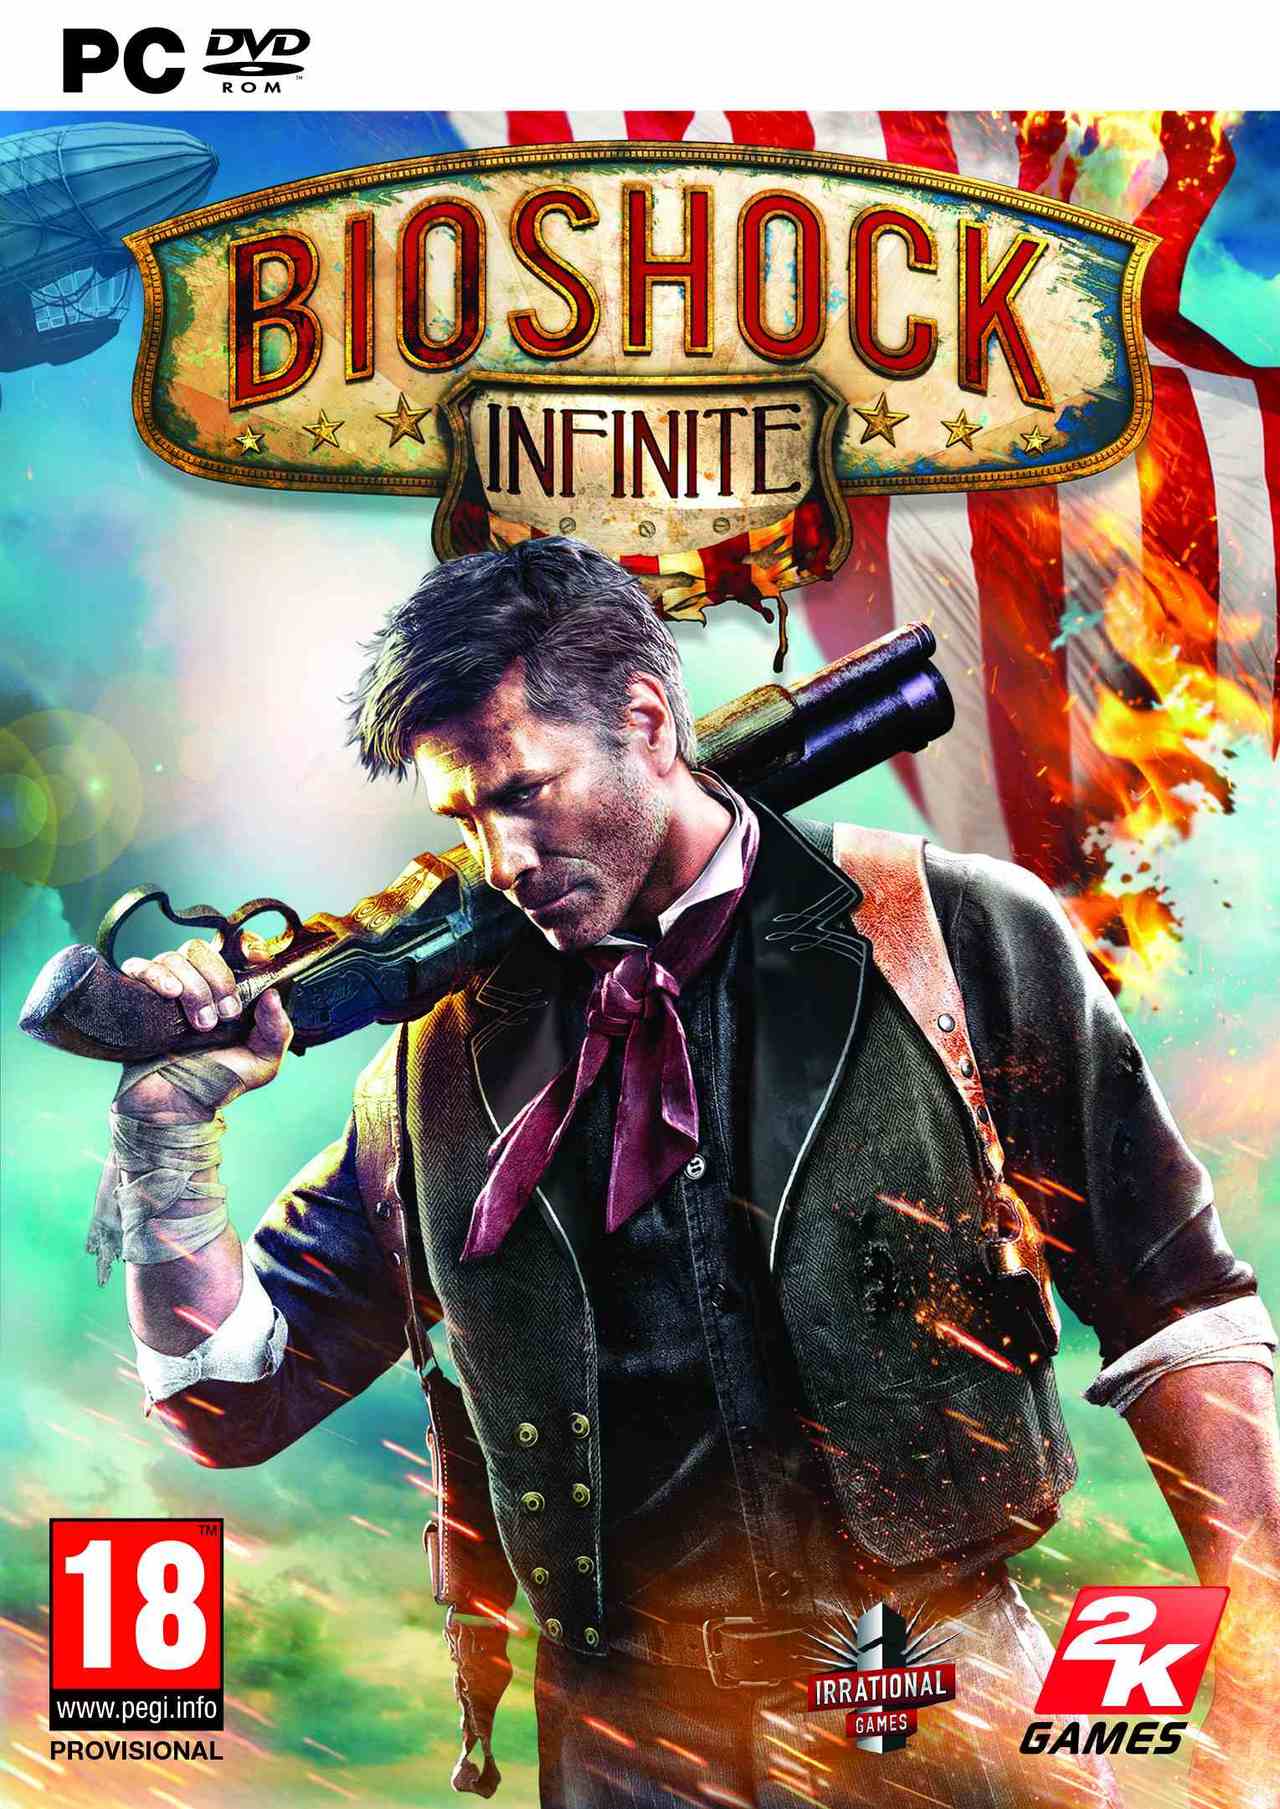 Game Việt Hoá] Bioshock Infinite: Kế hoạch Icarus - 3DVD - Có bản Việt Hóa  - Game pc Việt Hóa | Hình 3